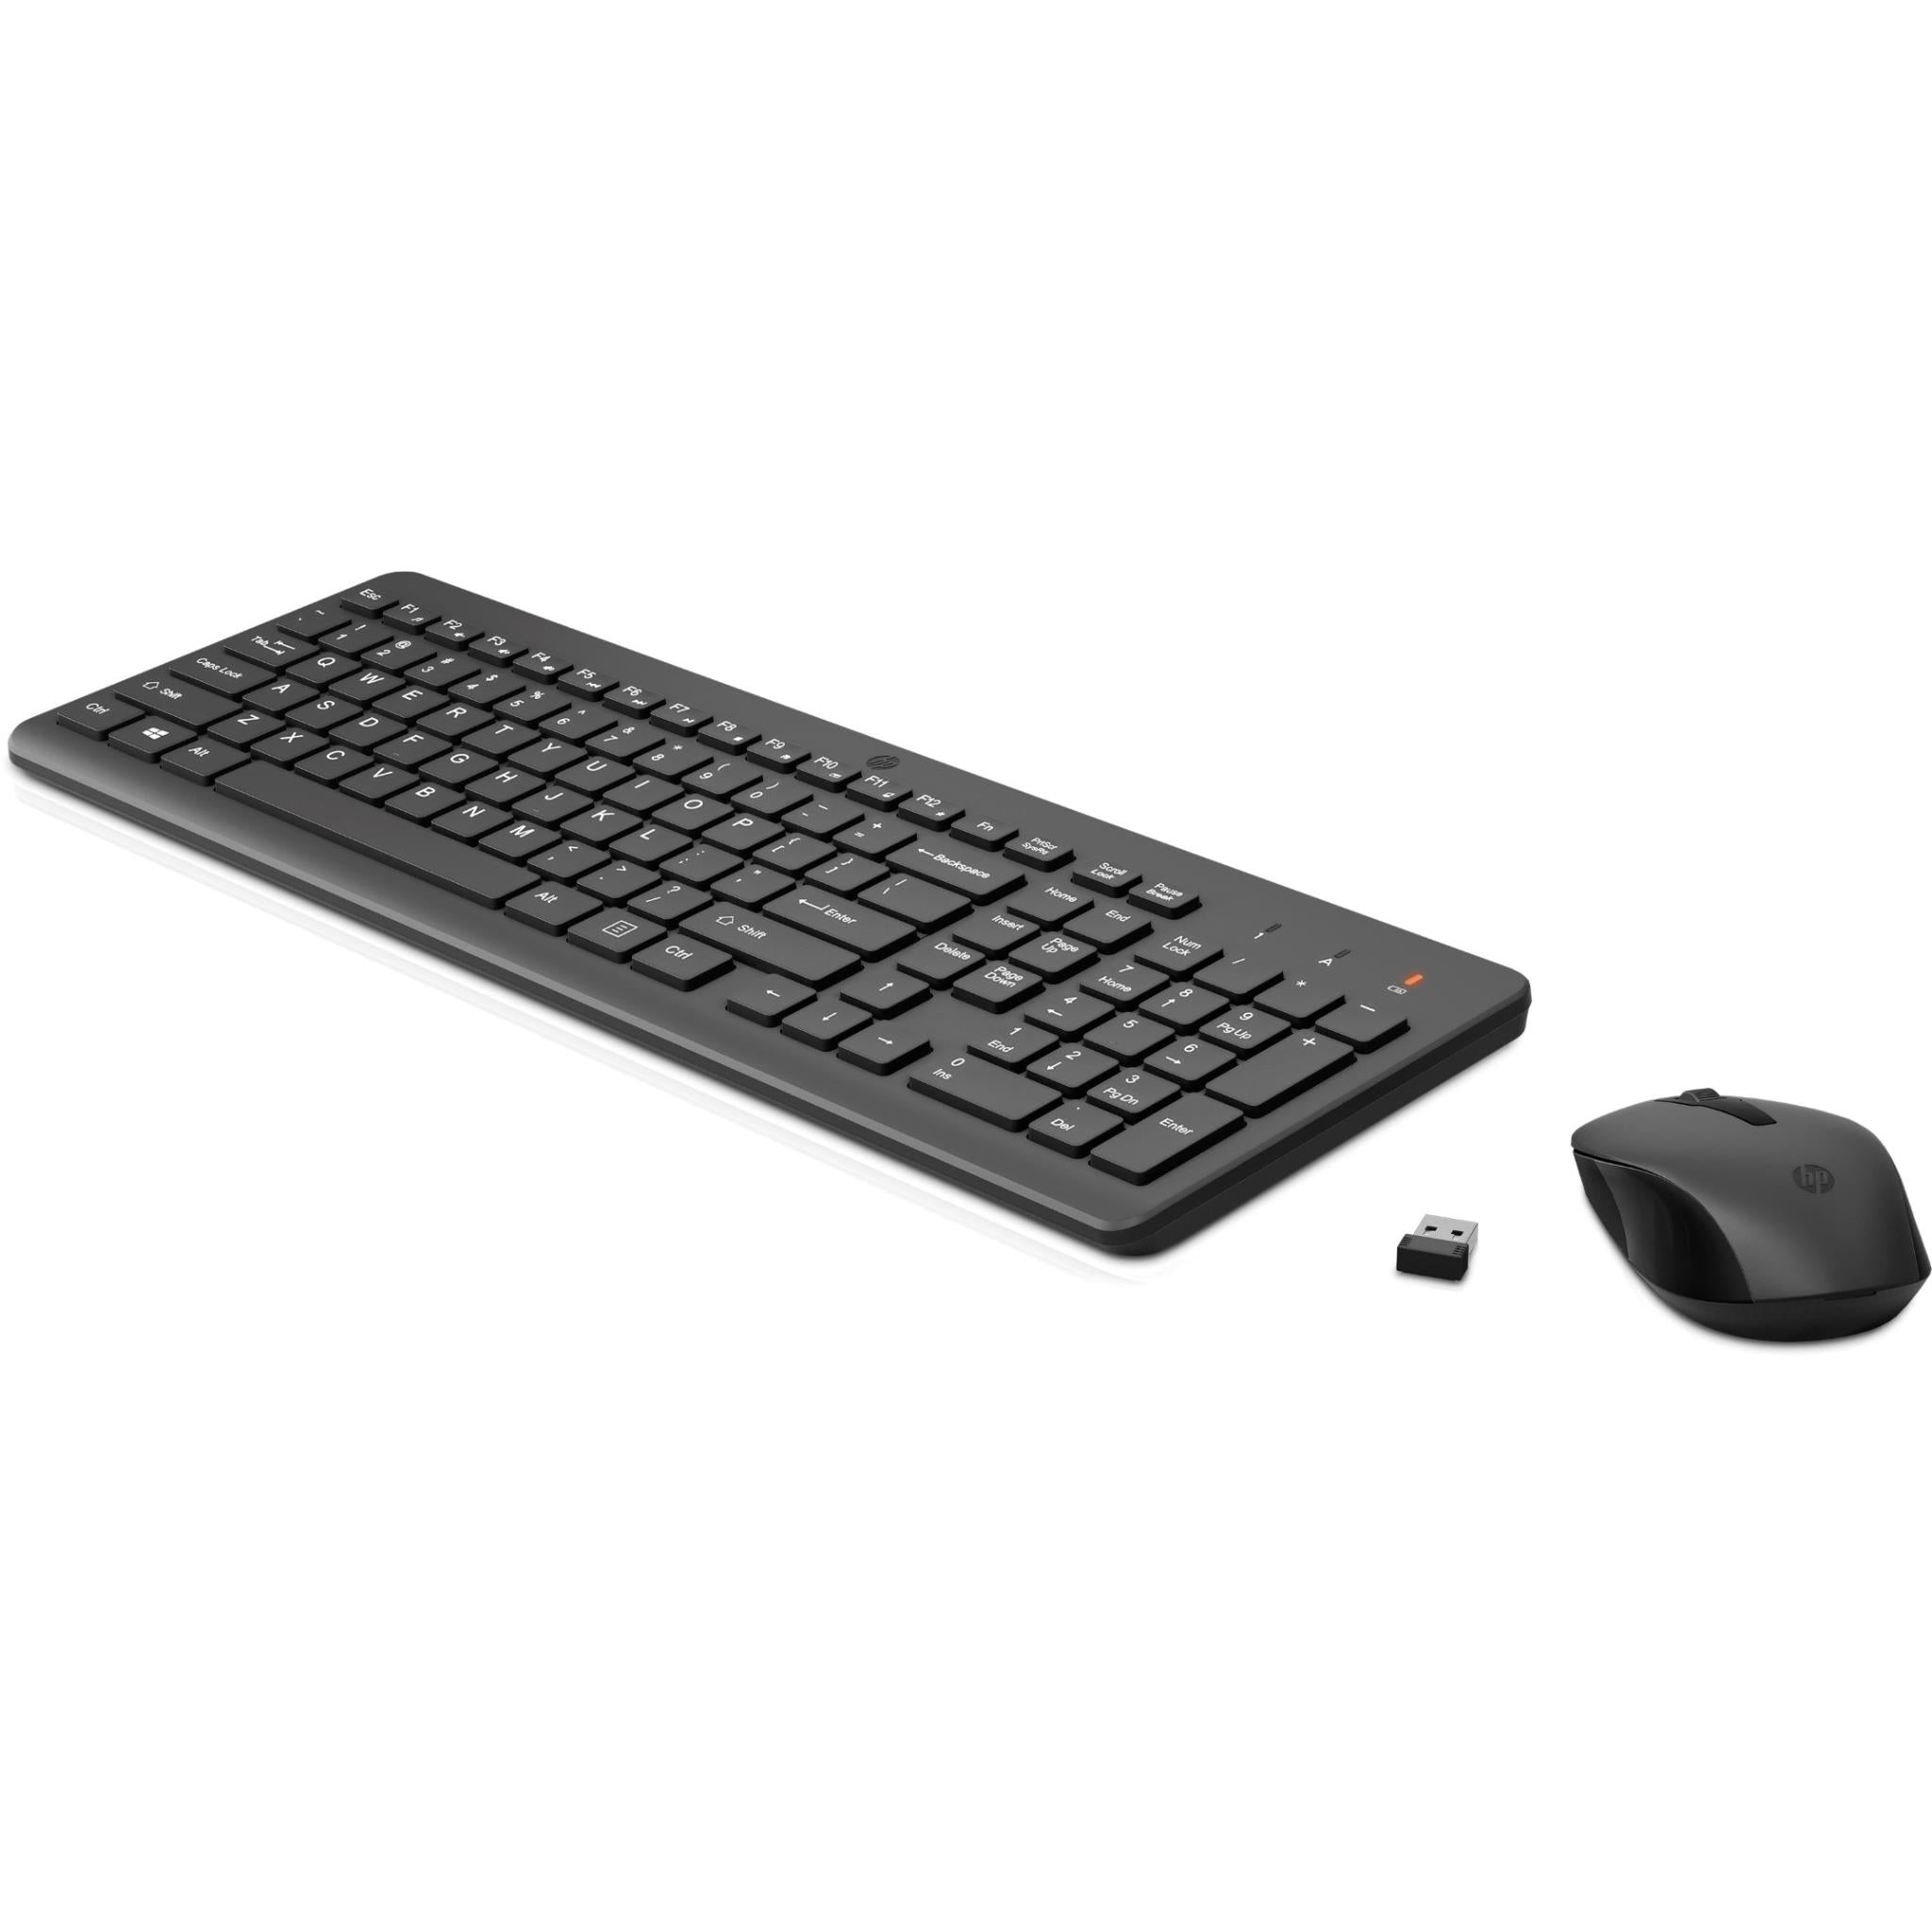 HP 330 Wireless Mouse & Keyboard Desktop Combo